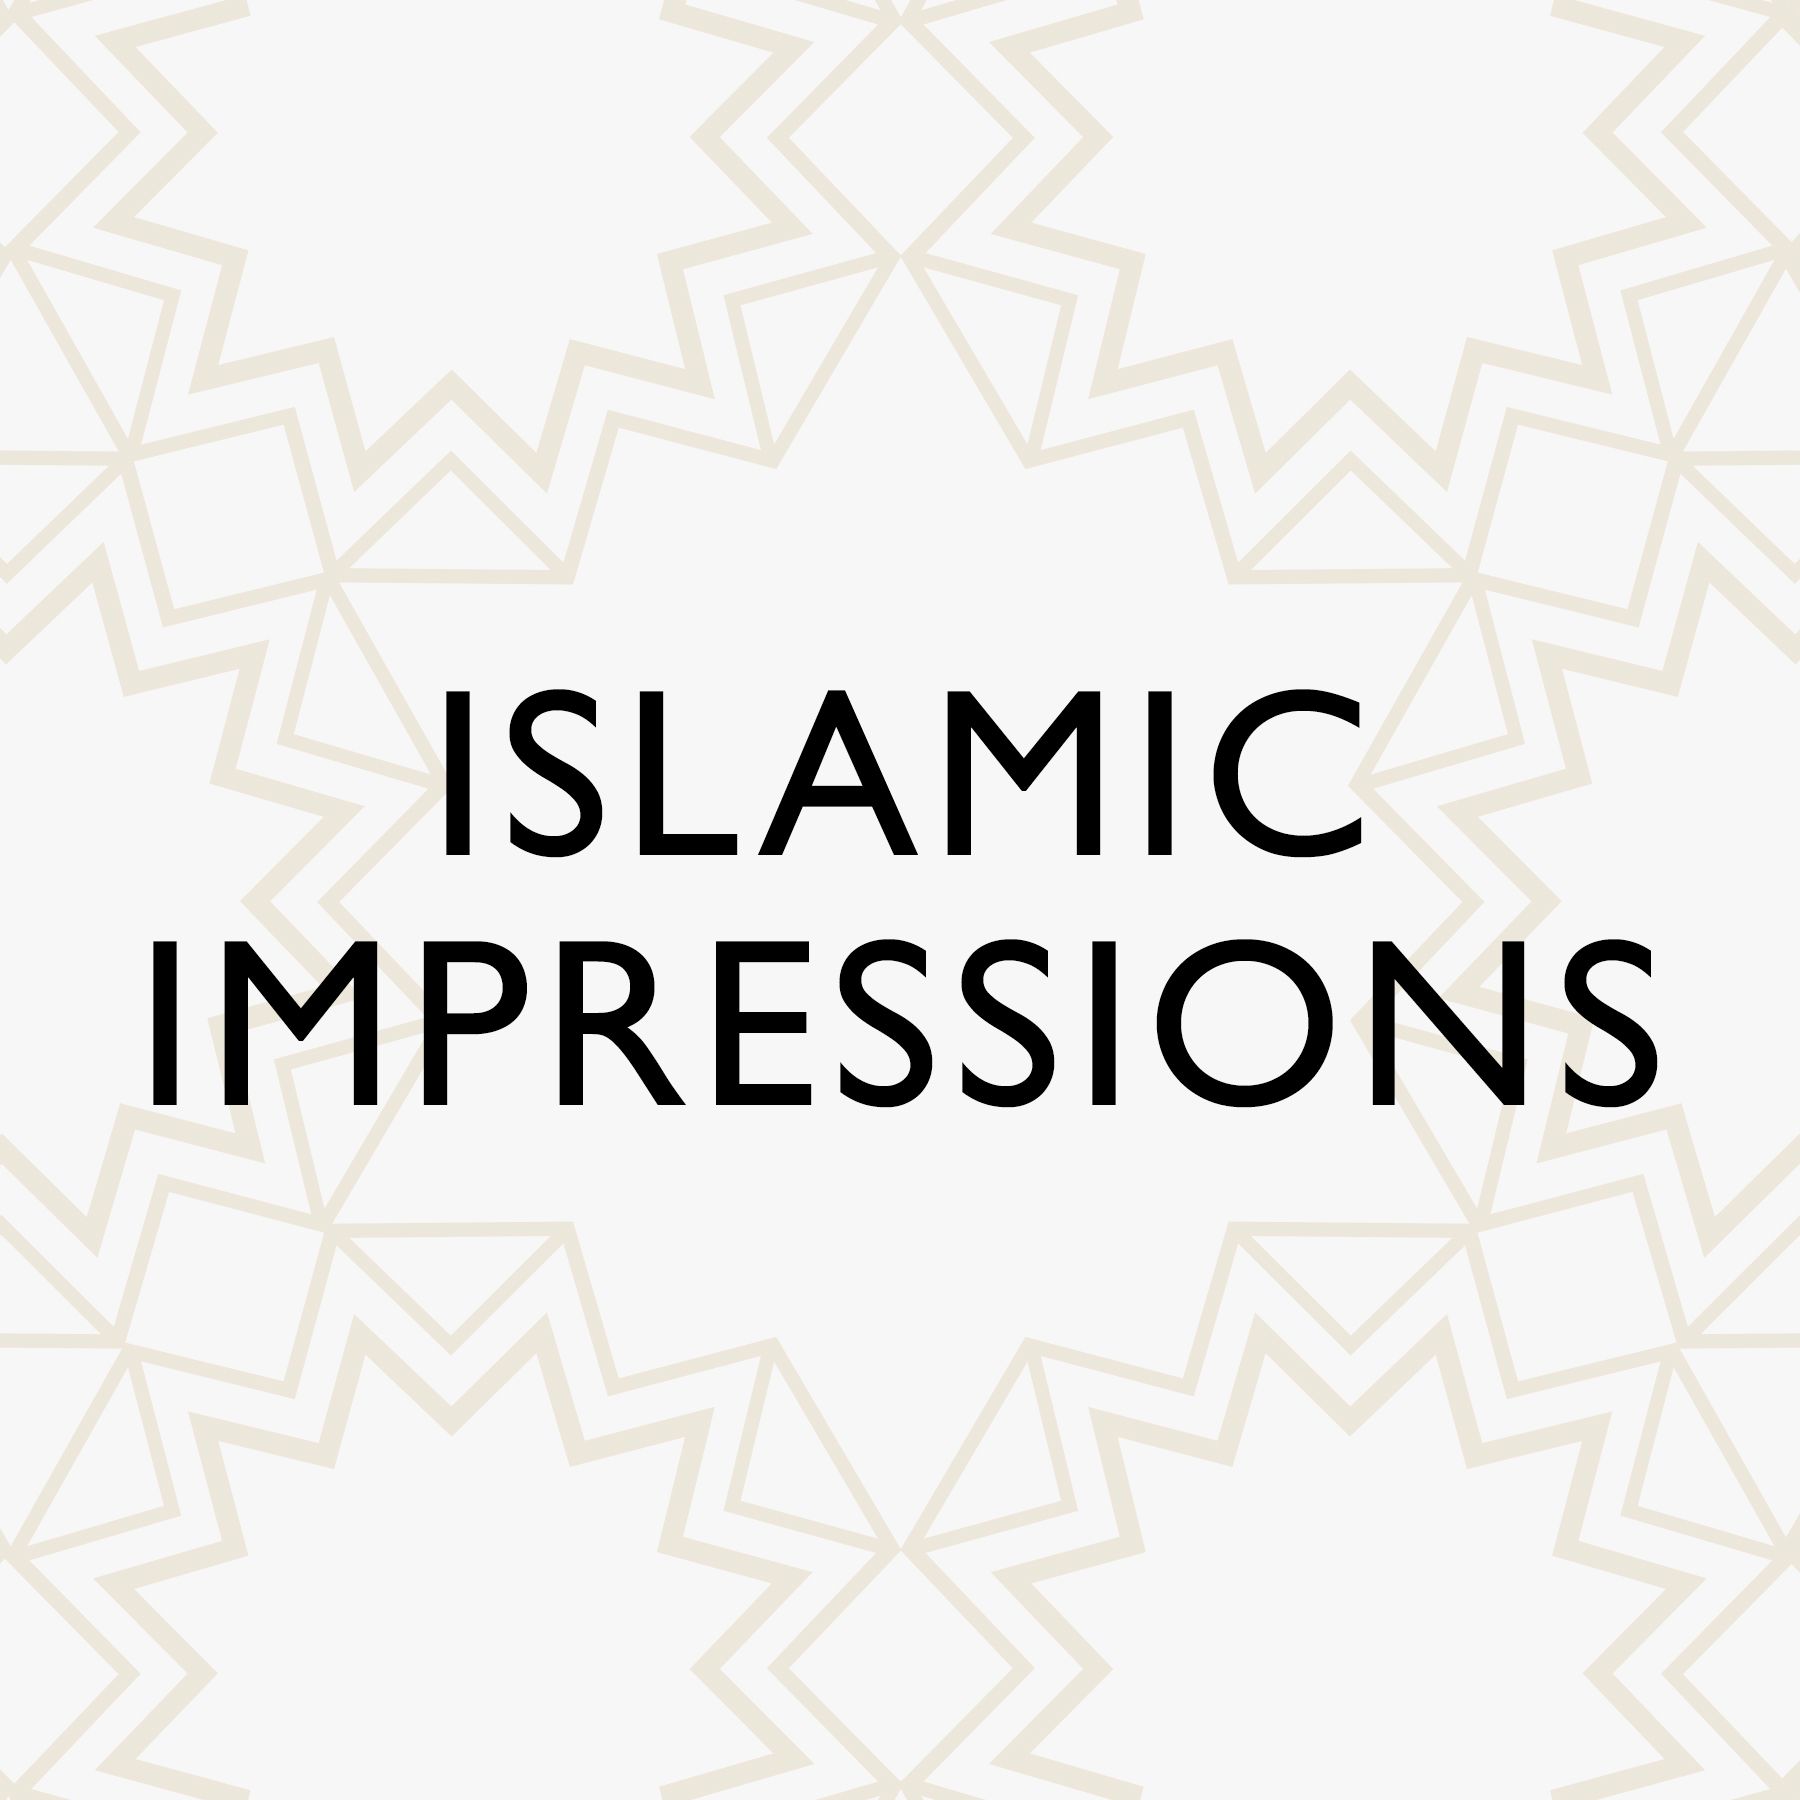 Islamic Impressions